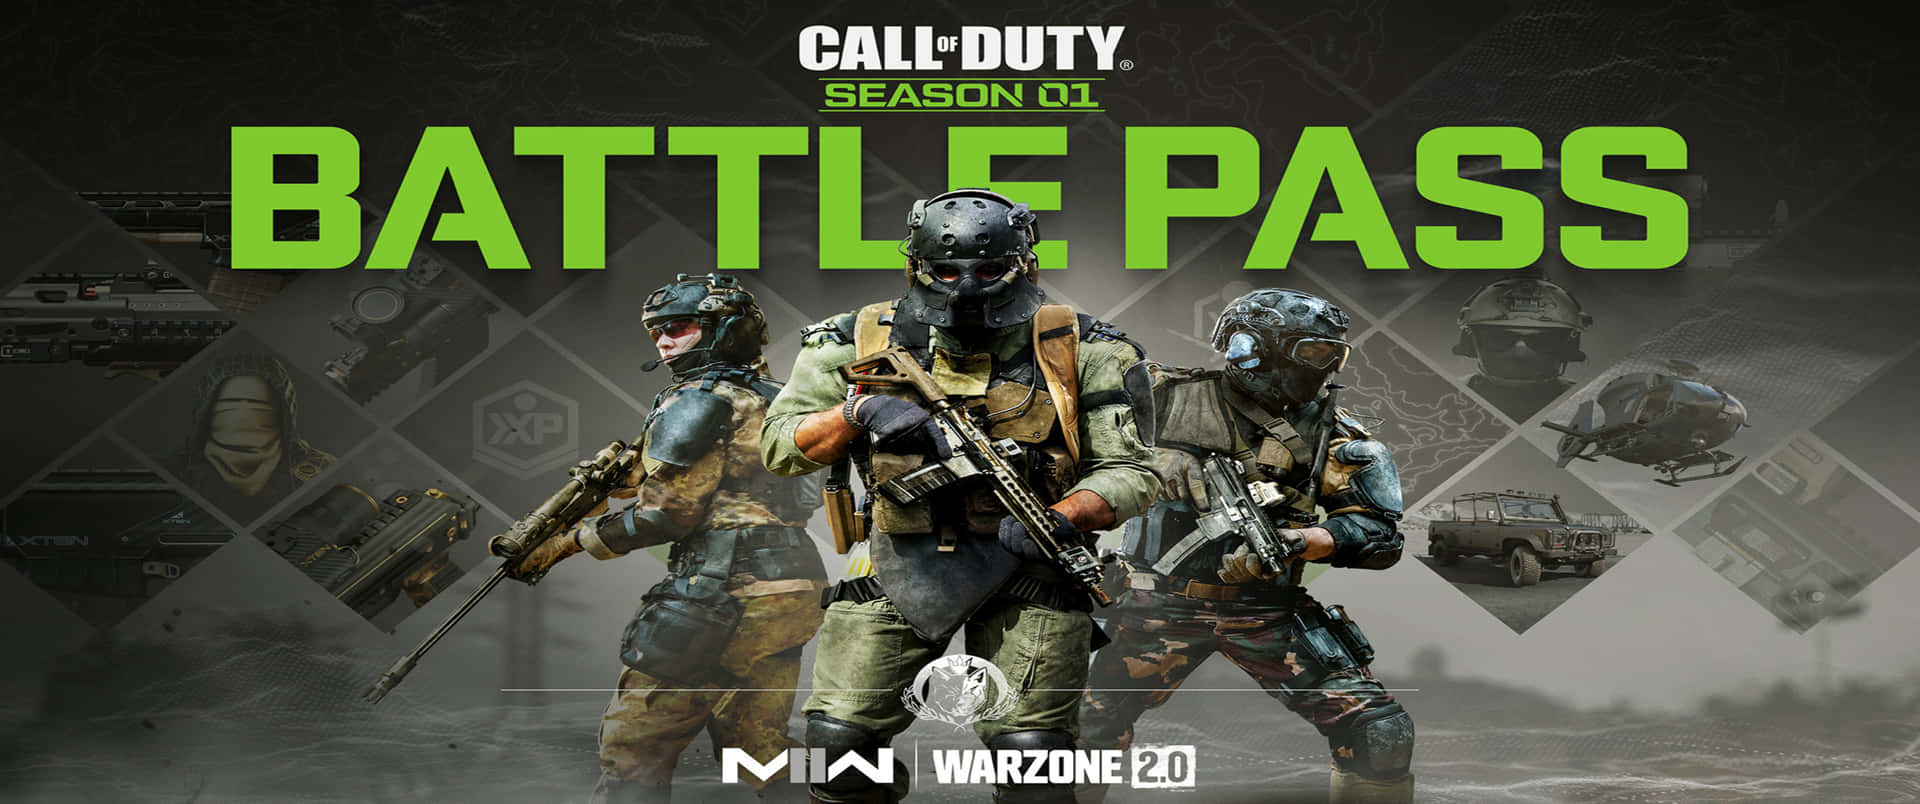 Säsong01 Battle Pass 3440x1440p Call Of Duty Modern Warfare Bakgrundsbild.